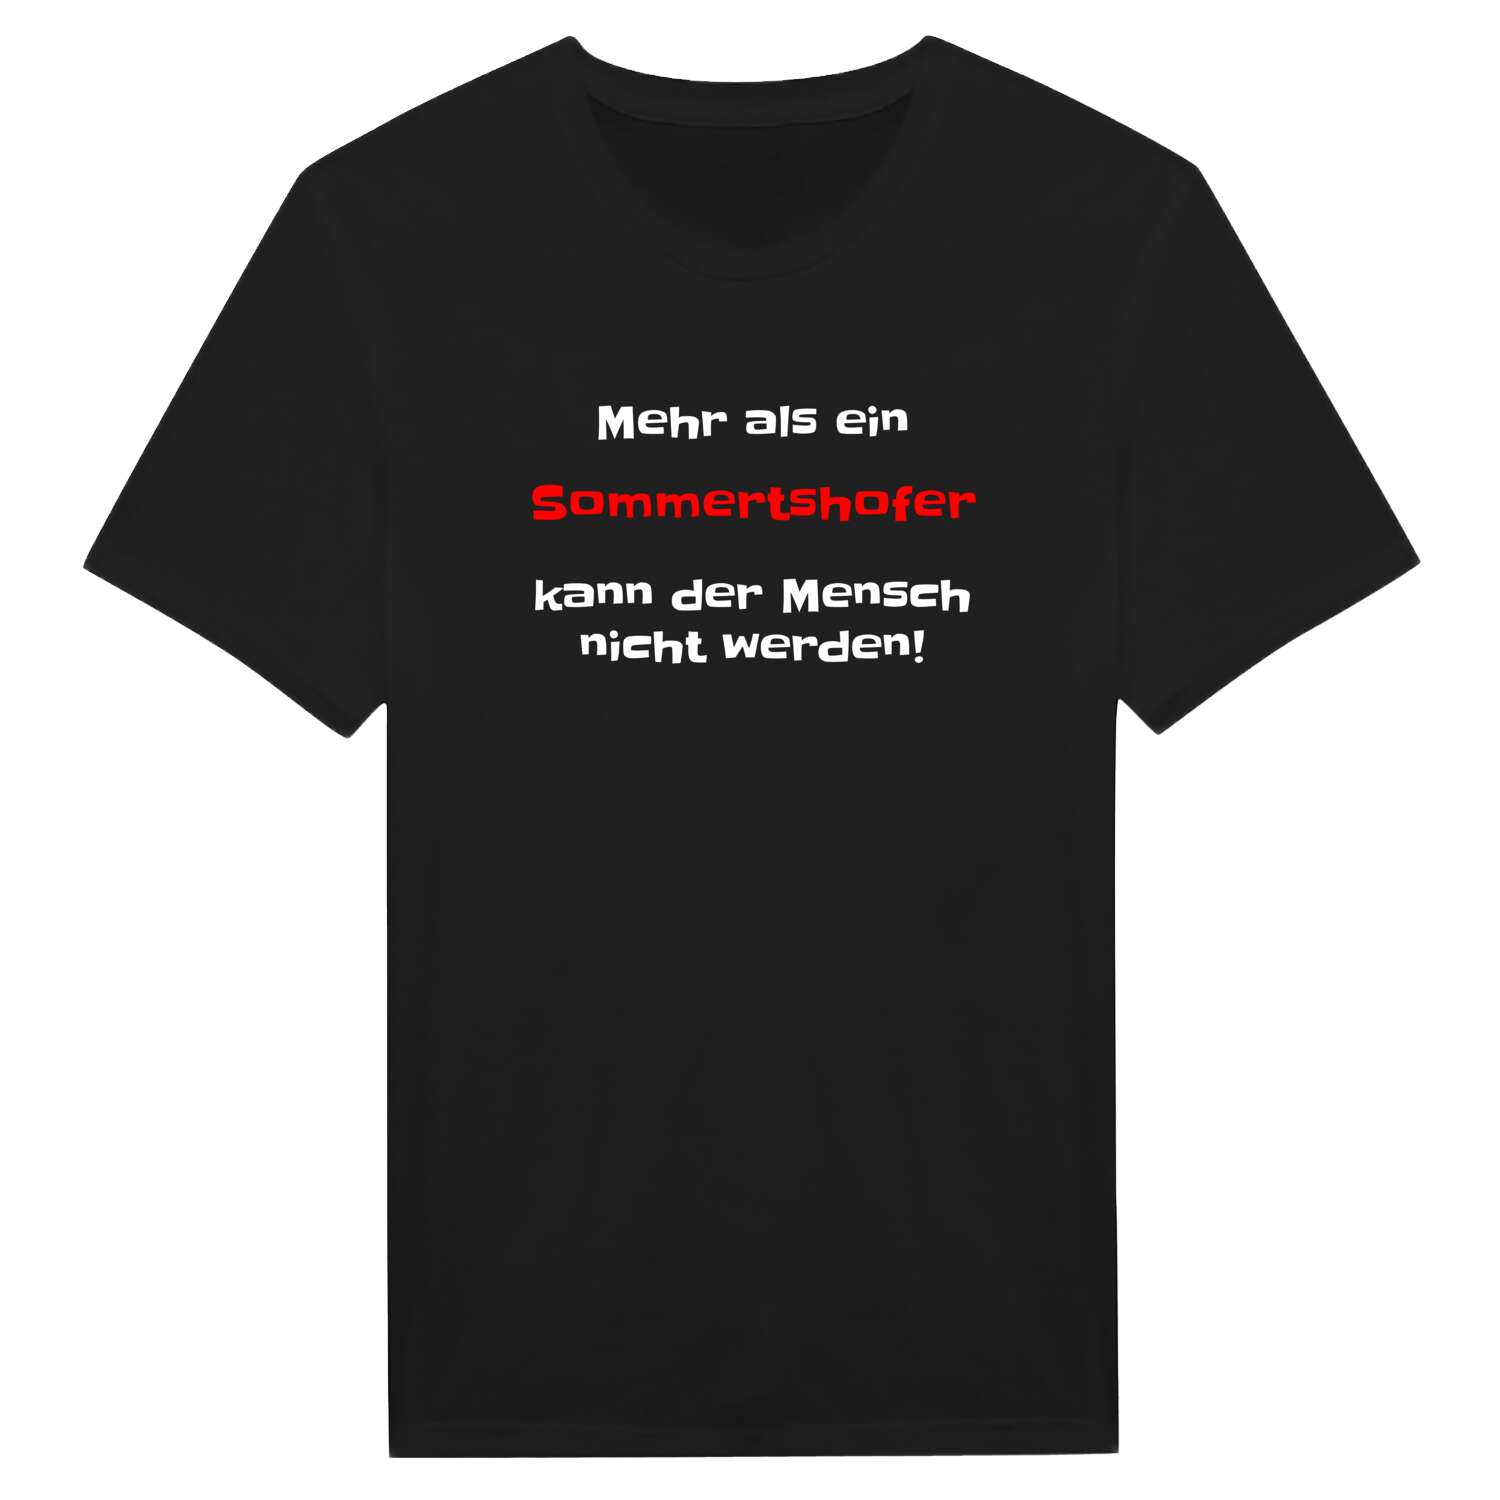 Sommertshof T-Shirt »Mehr als ein«